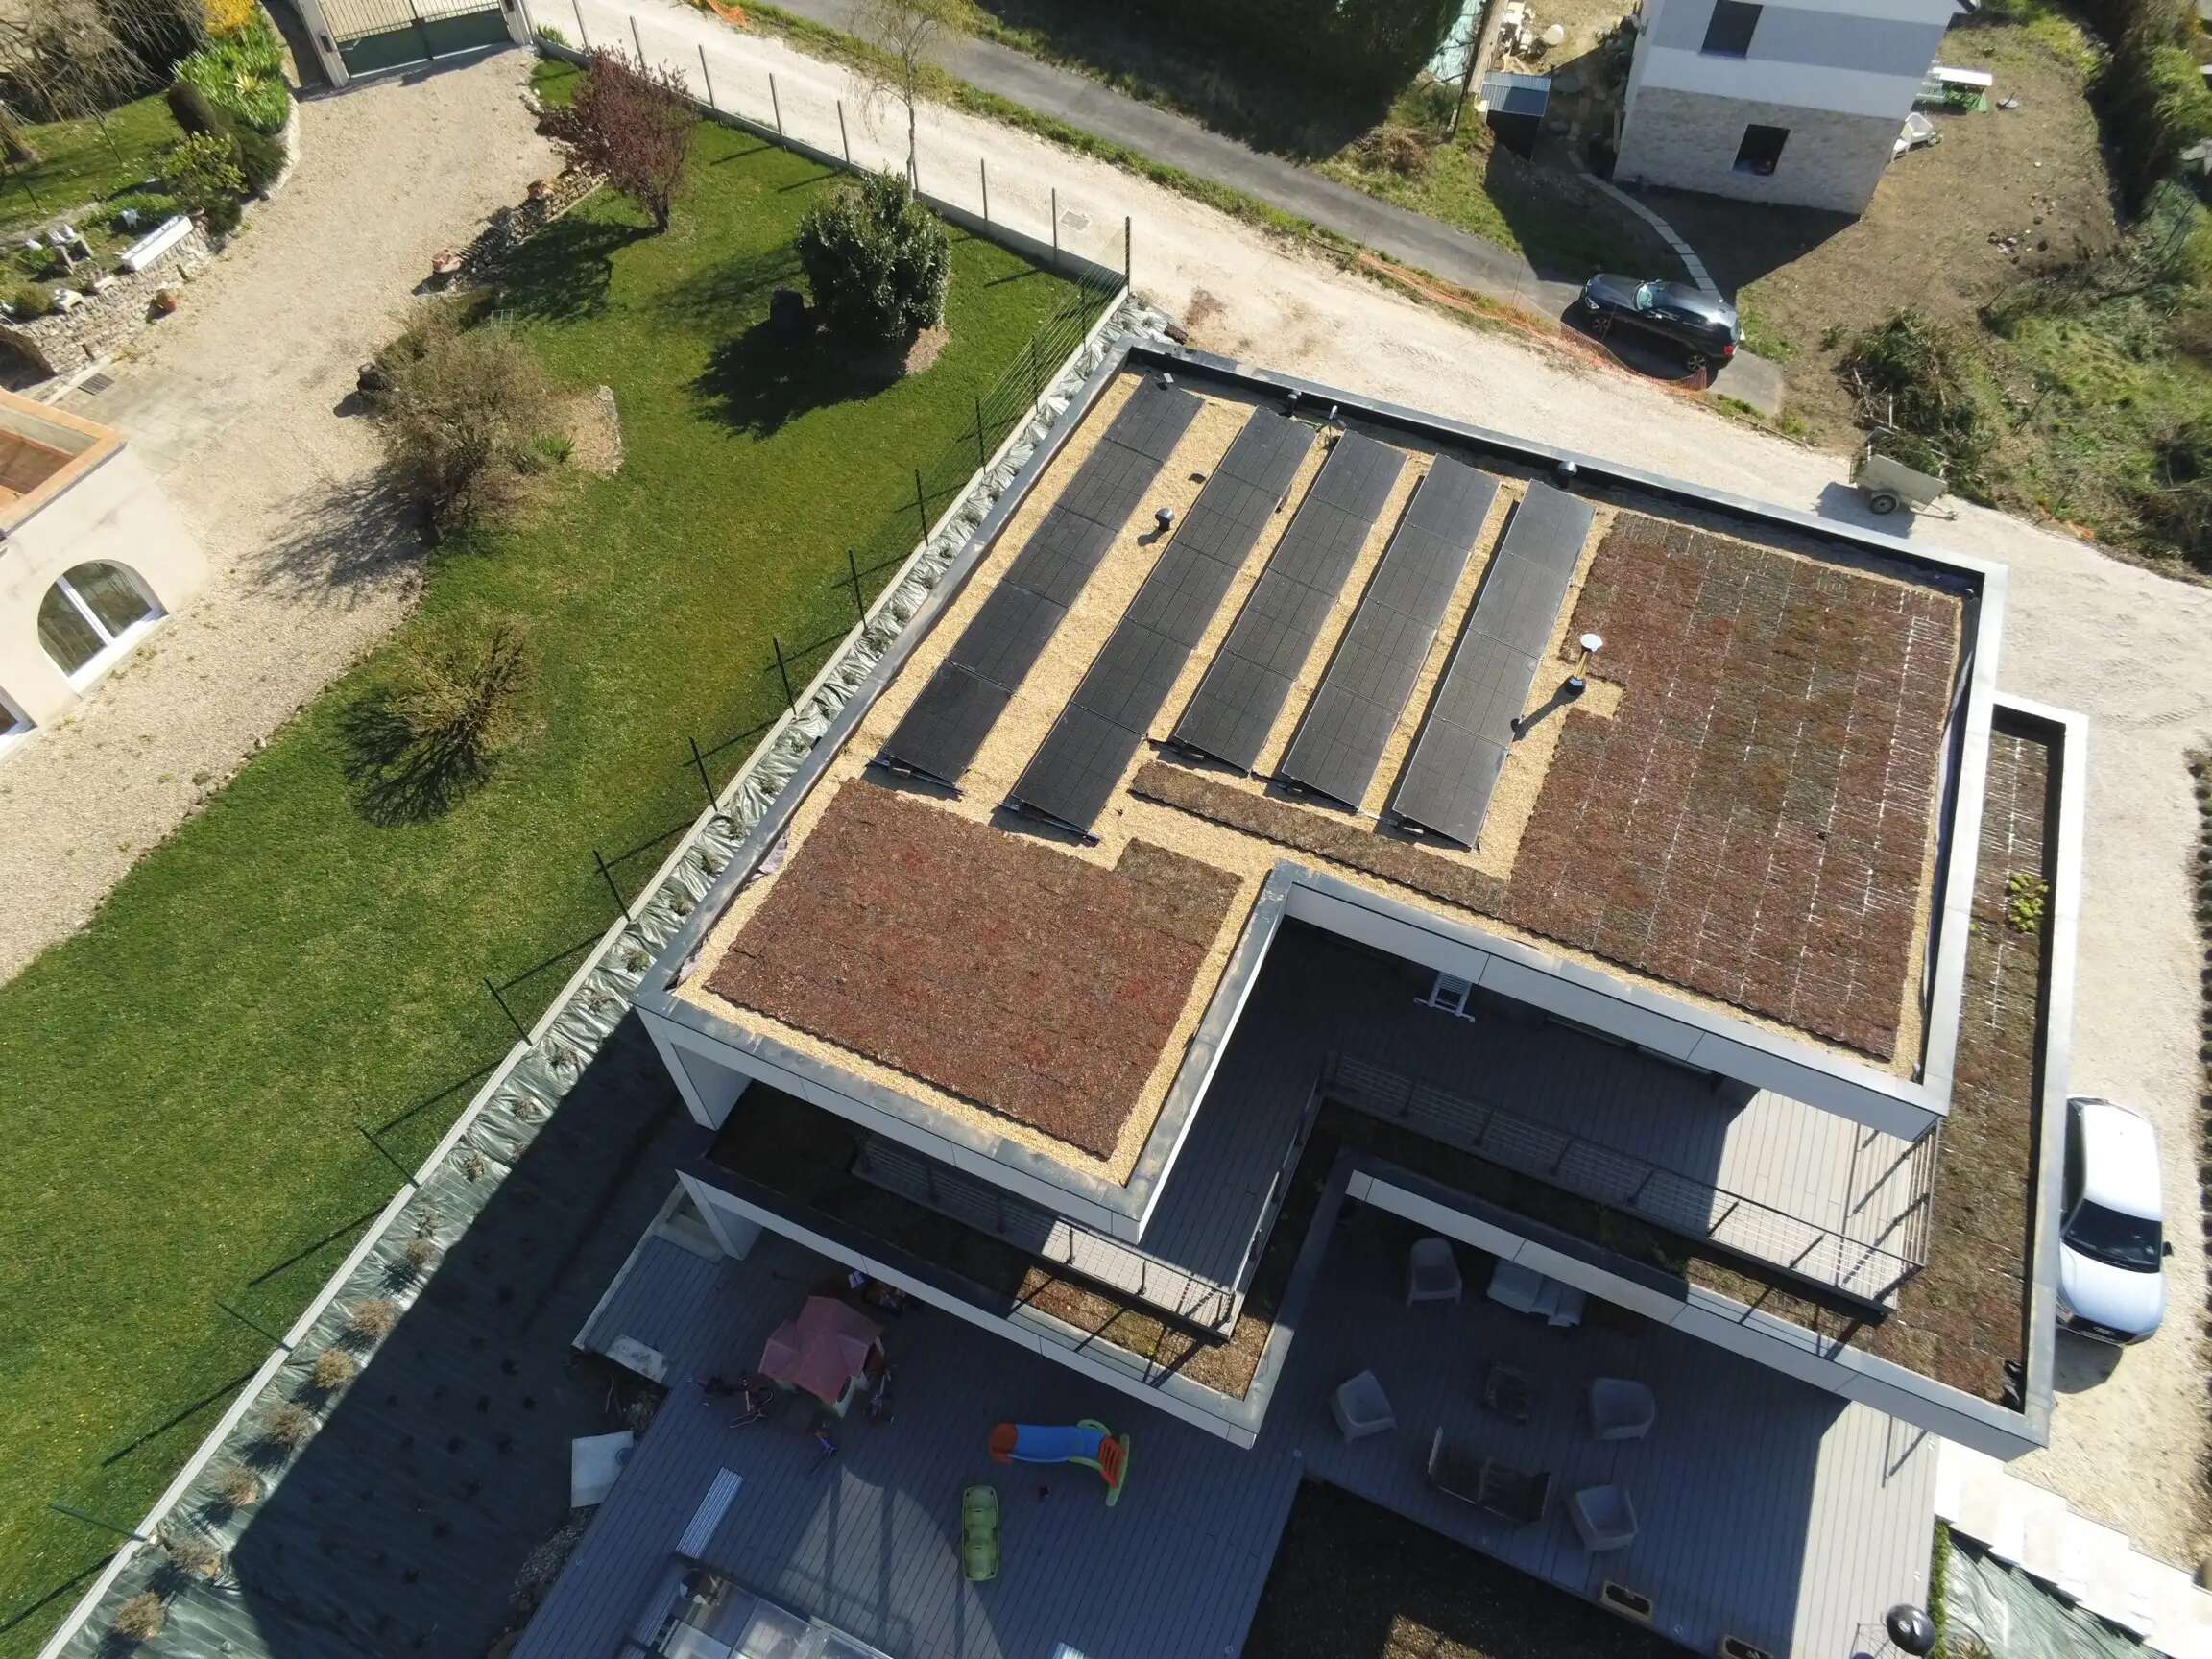 Fixation de panneau solaire pour toiture terrasse - S-Dome 6